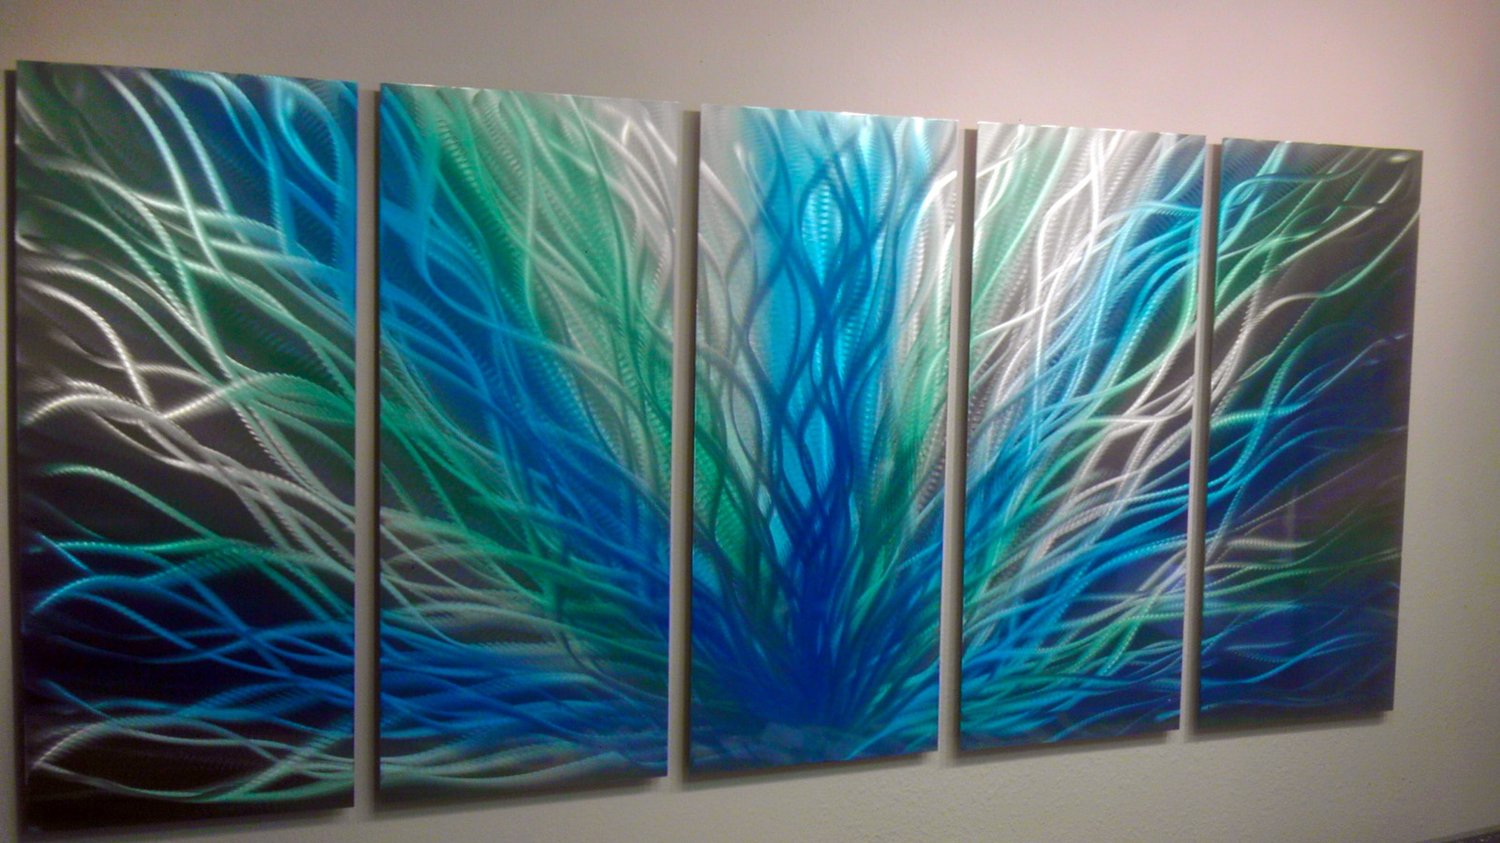 Radiance Blue Green - 36x79 - Metal Wall Art Contemporary Modern Decor